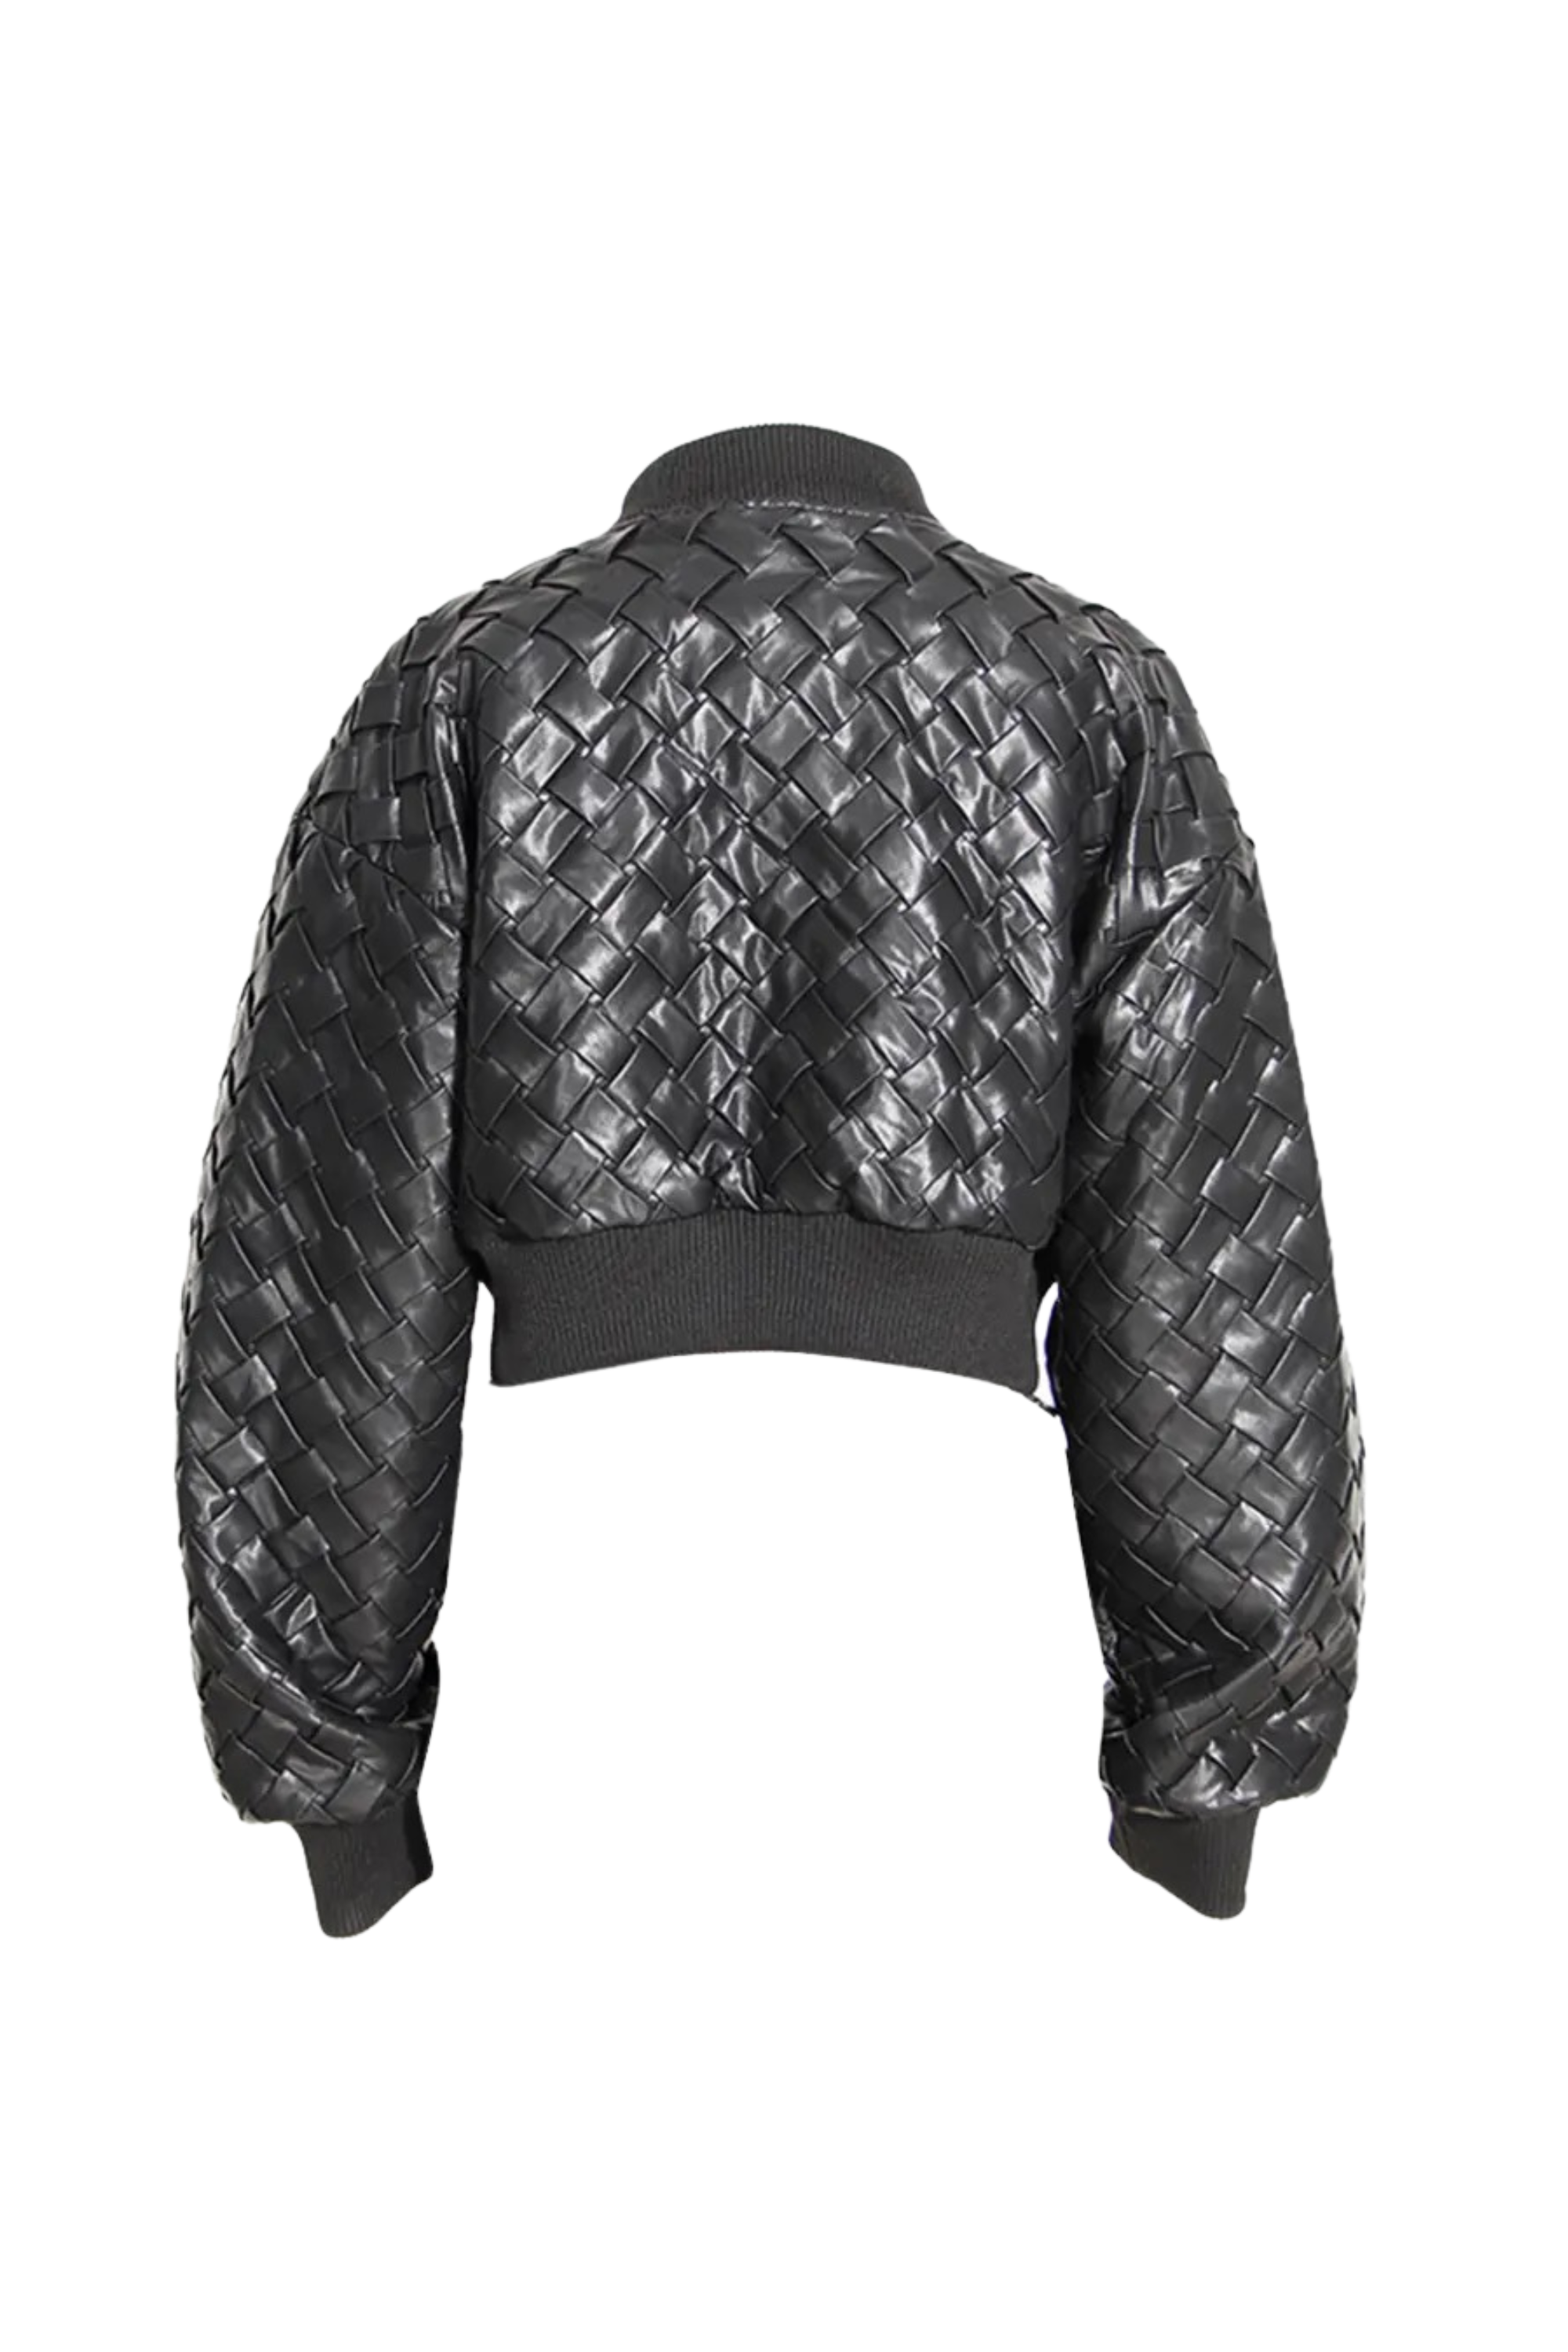 GOLDxTEAL black vegan woven leather bomber jacket.